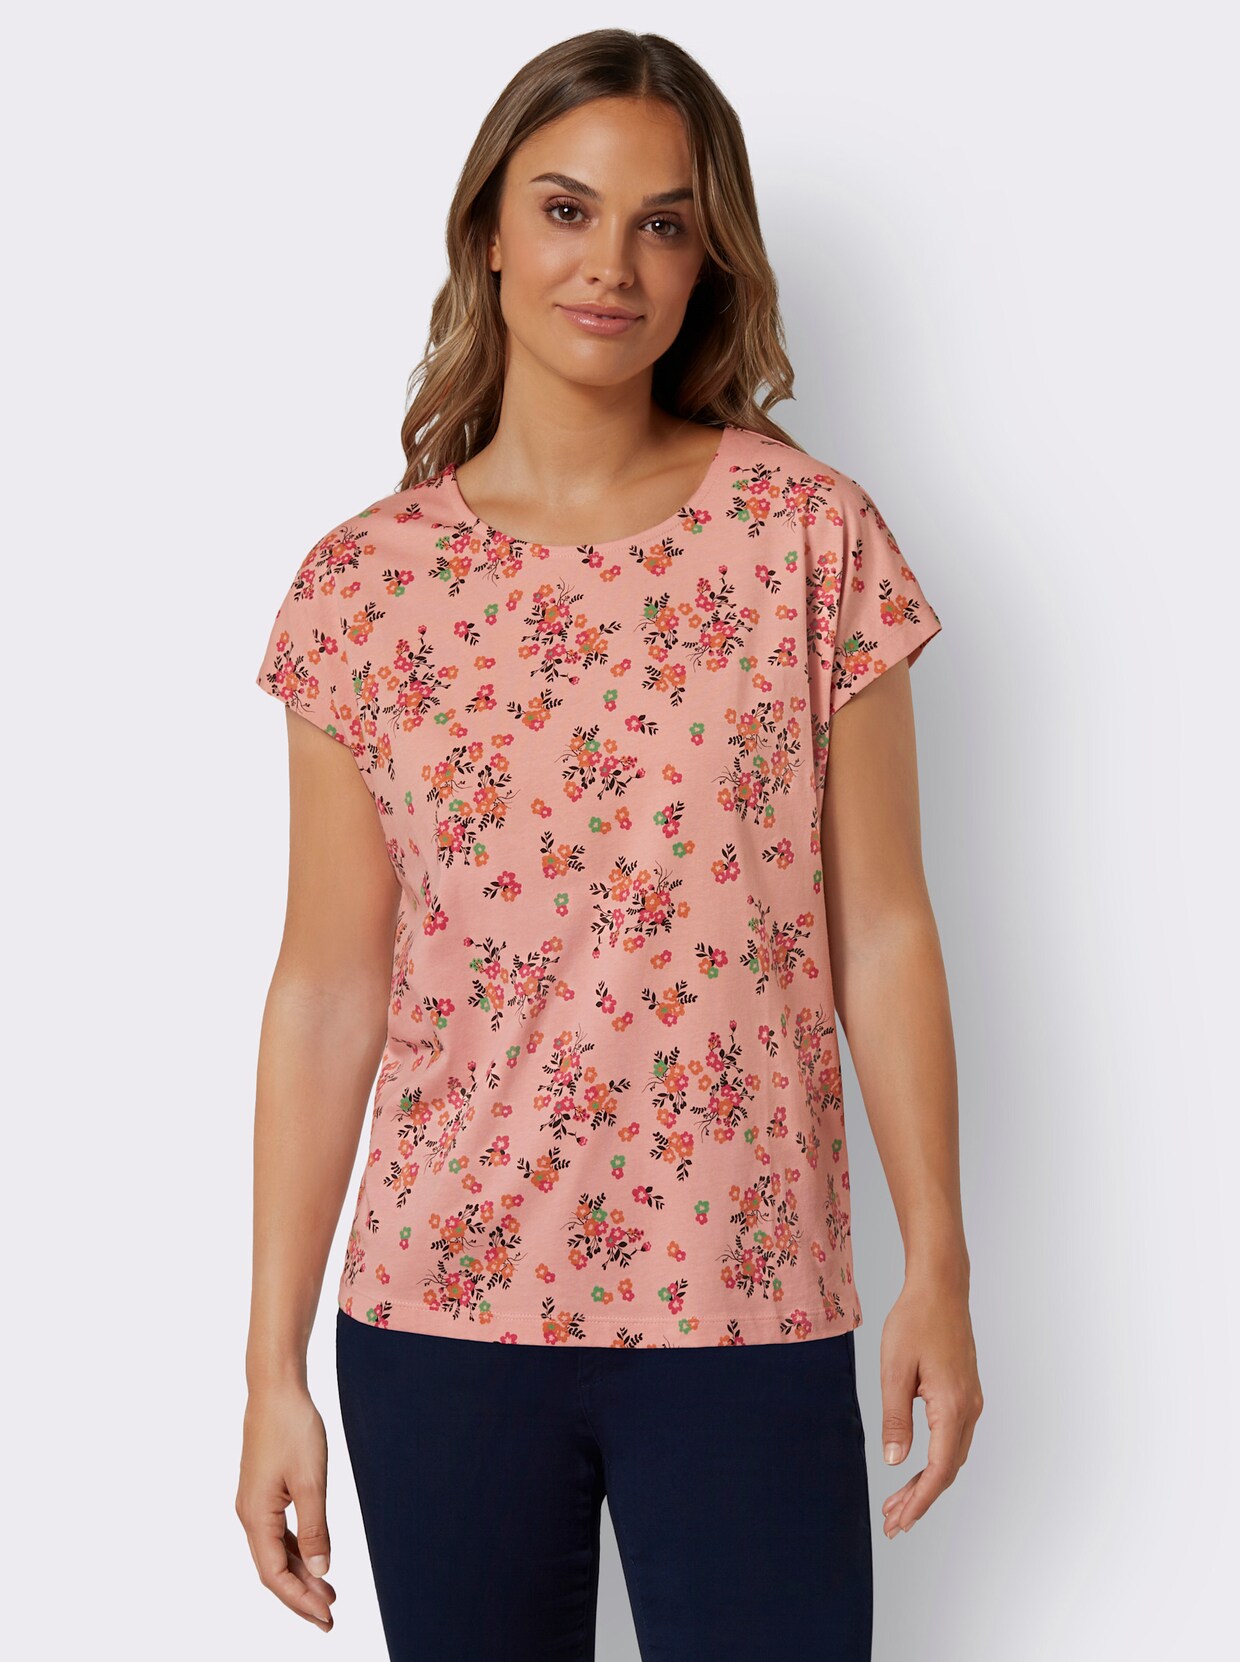 Tričko s okrúhlym výstrihom - ružový kremeň-fuchsia-tlačený